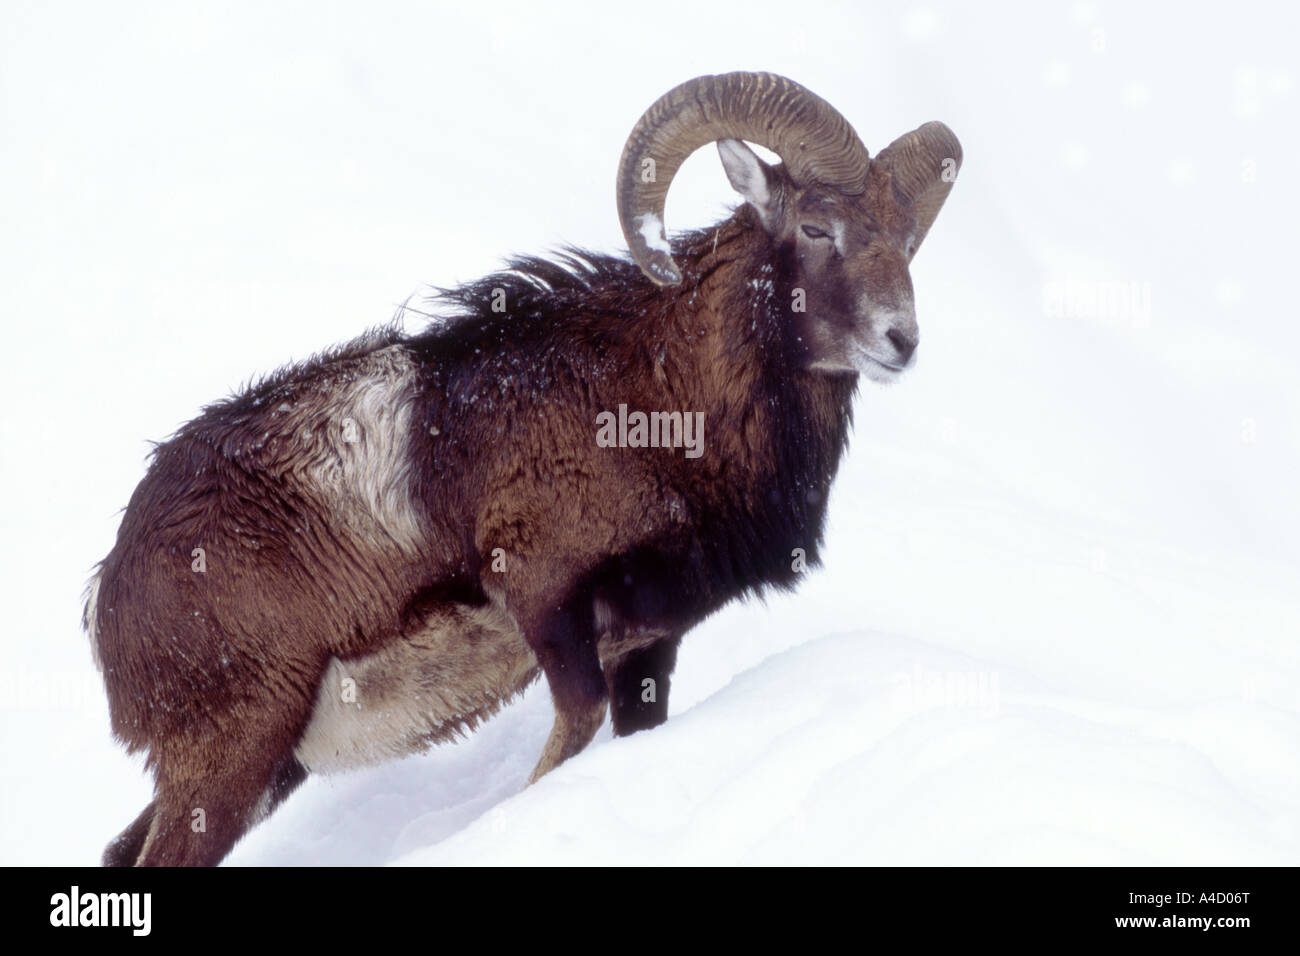 Mouflon (Ovis ammon musimon, Ovis musimon), ram in snow Stock Photo